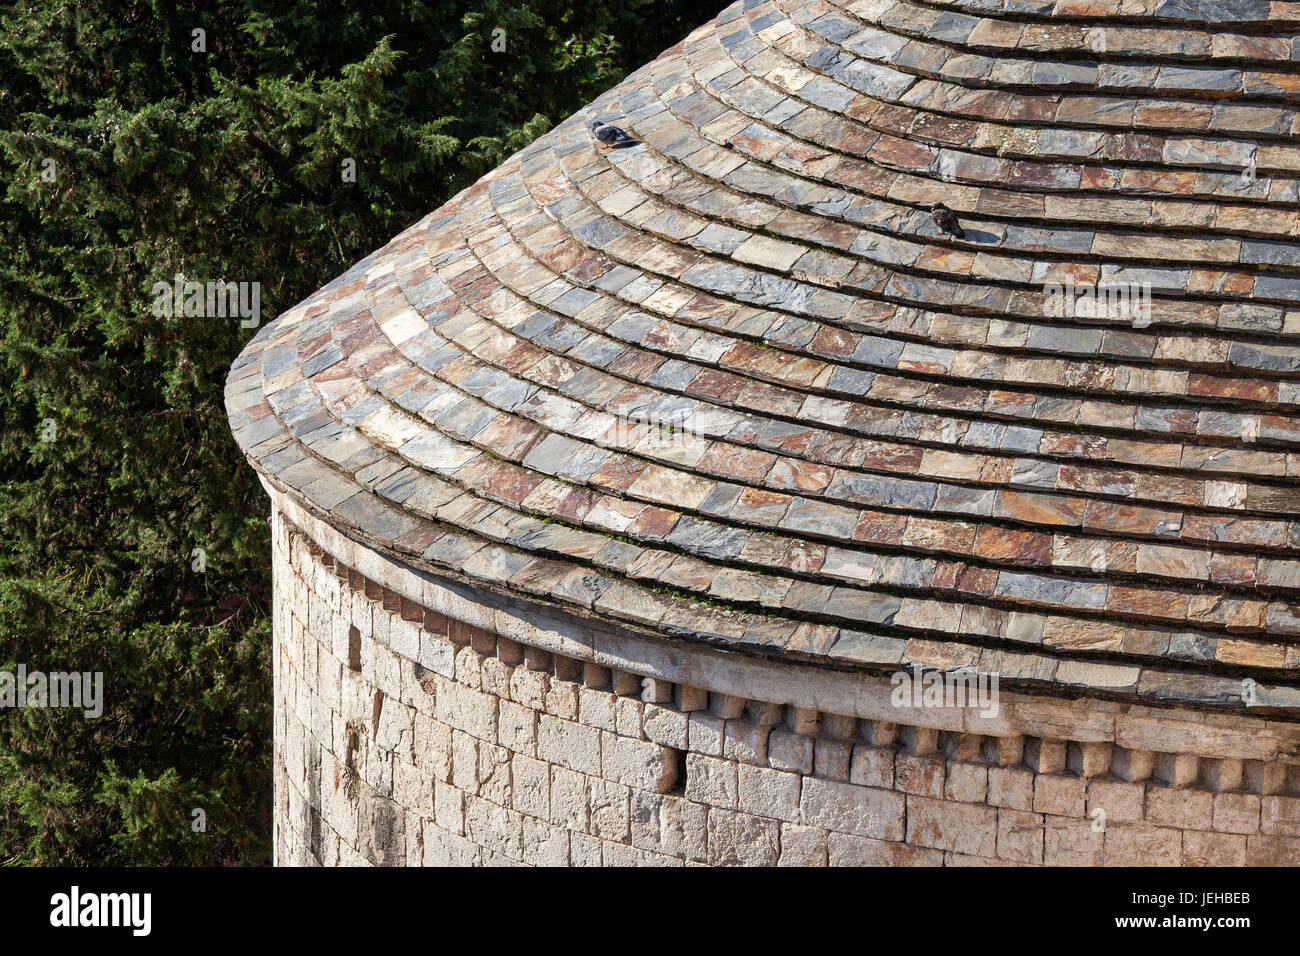 Spanien, Katalonien, Girona, dome Stein Schiefer Fliesen runden Dach des Benediktiner-Kloster Sant Pere de Galligants, 12. Jahrhundert Romanesque Architektur Stockfoto